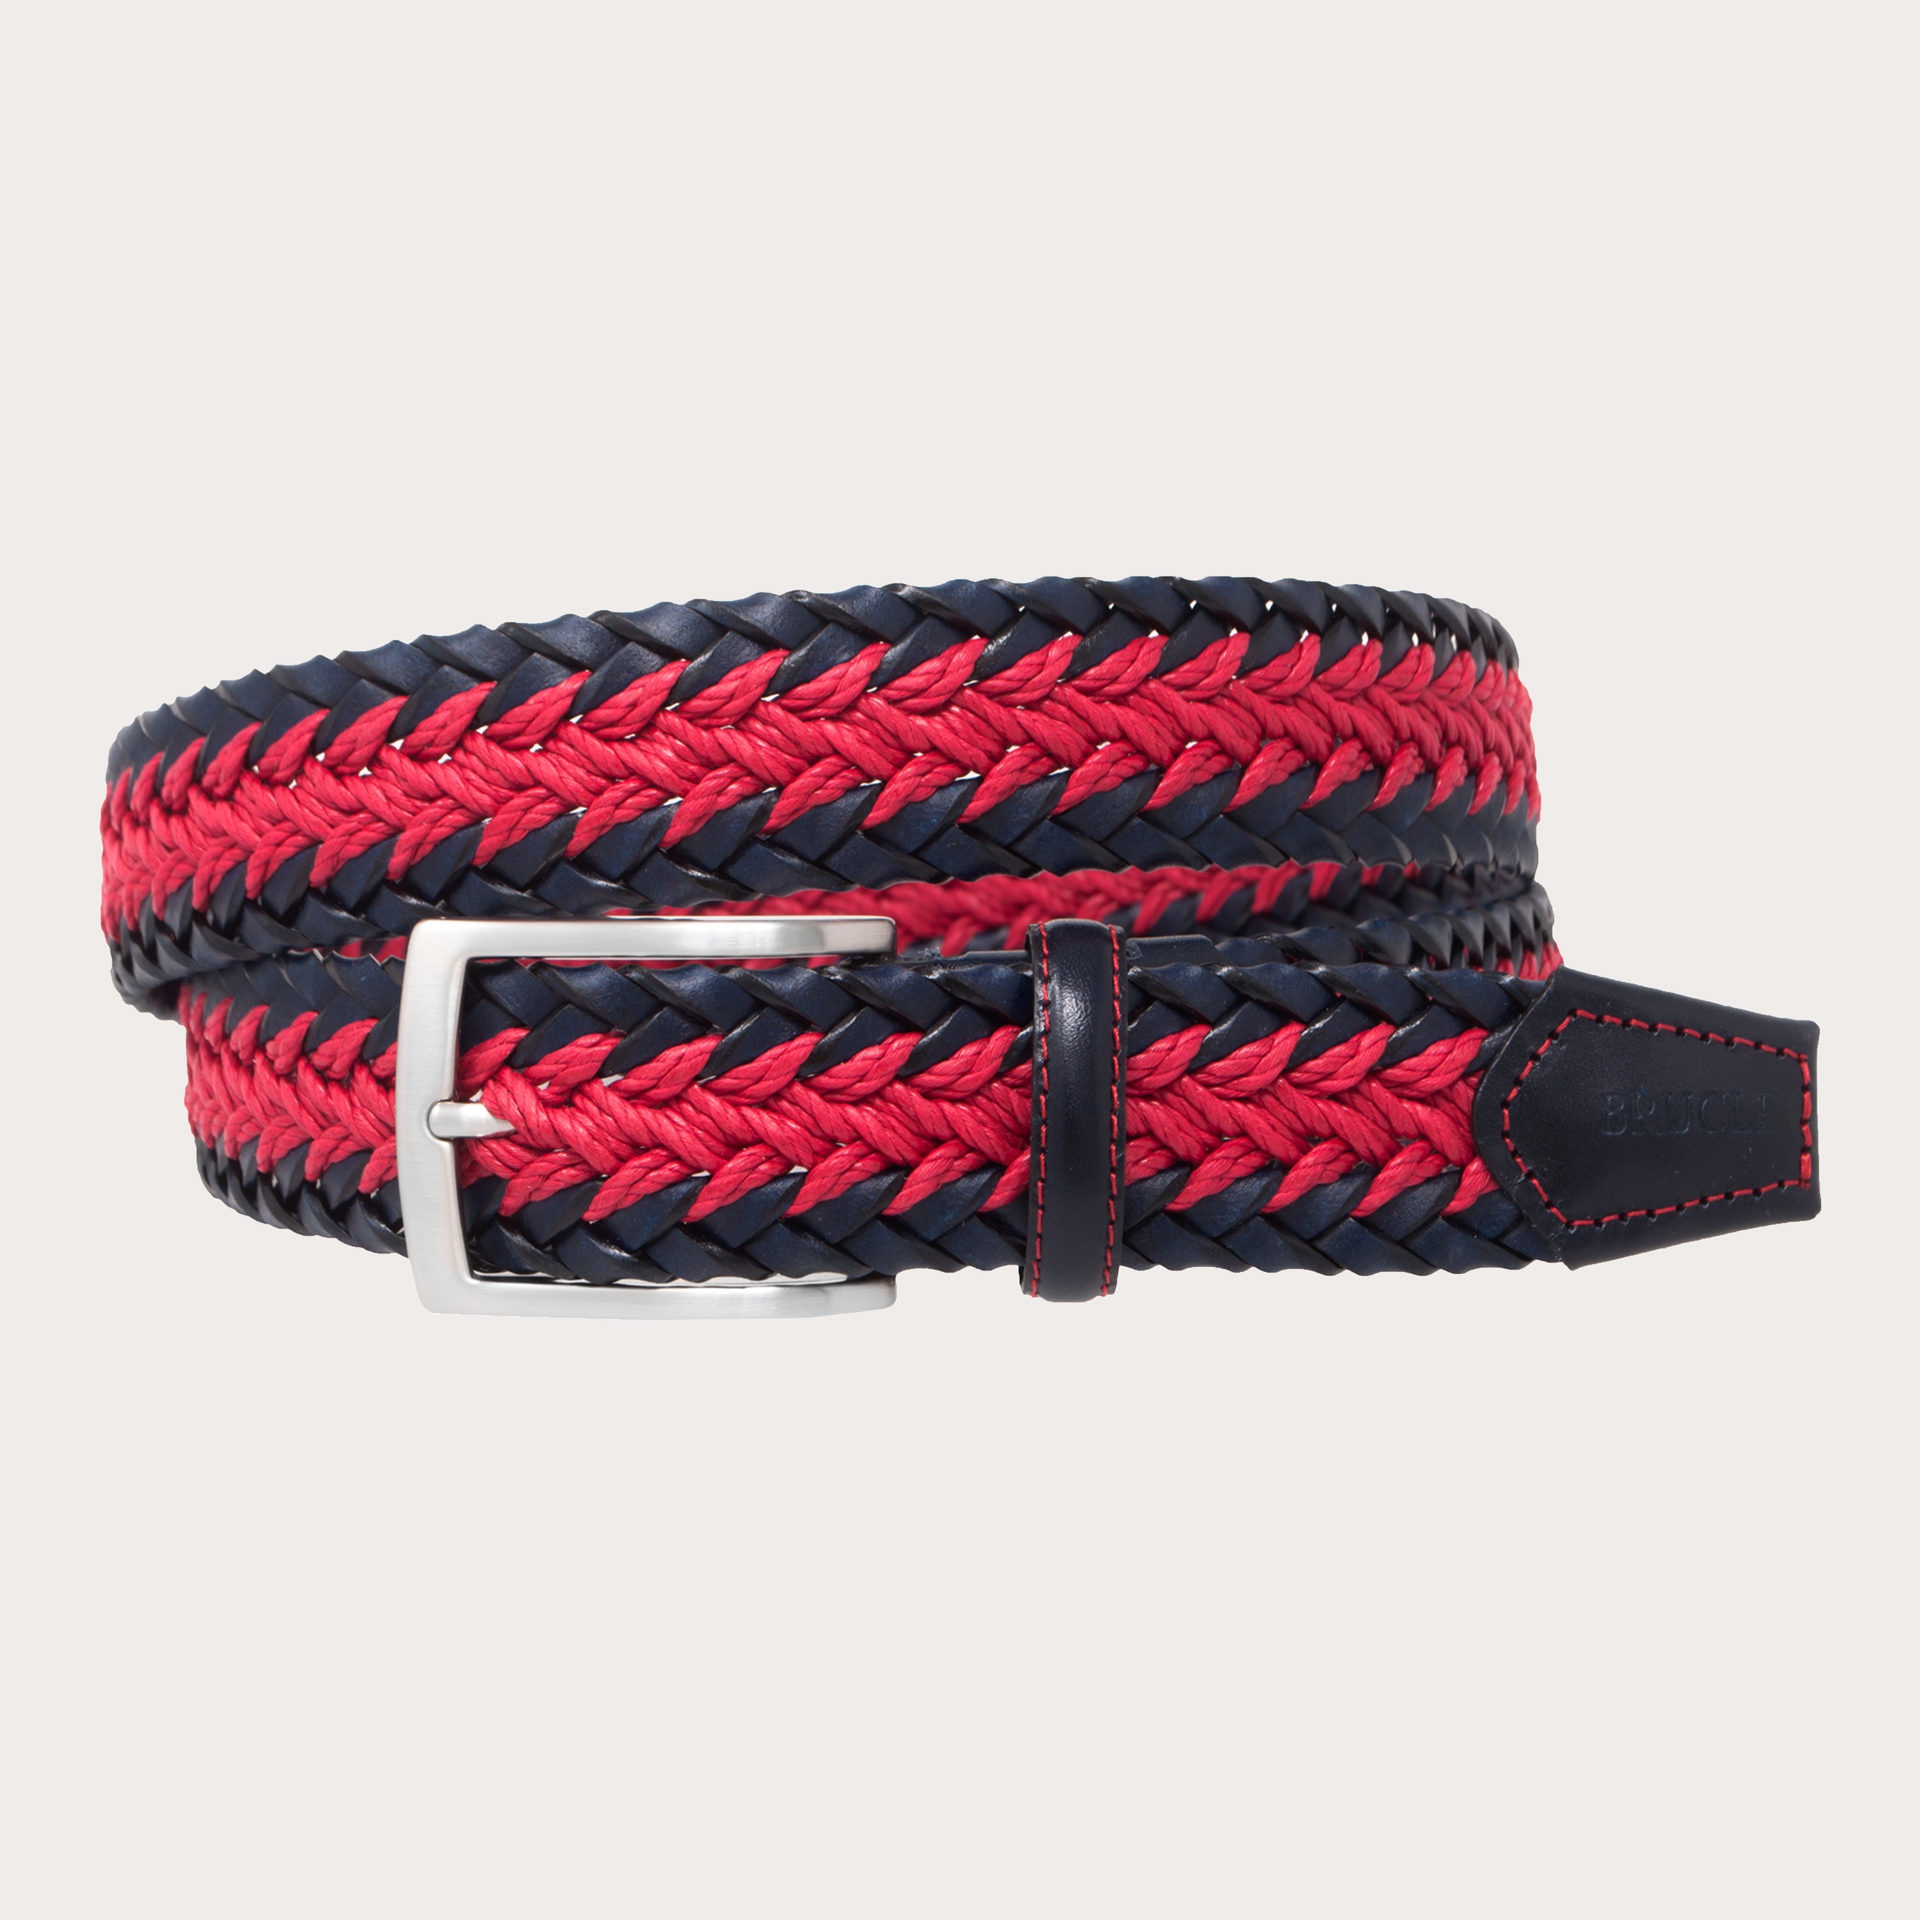 Cintura intrecciata rossa e blu navy in corda e cuoio